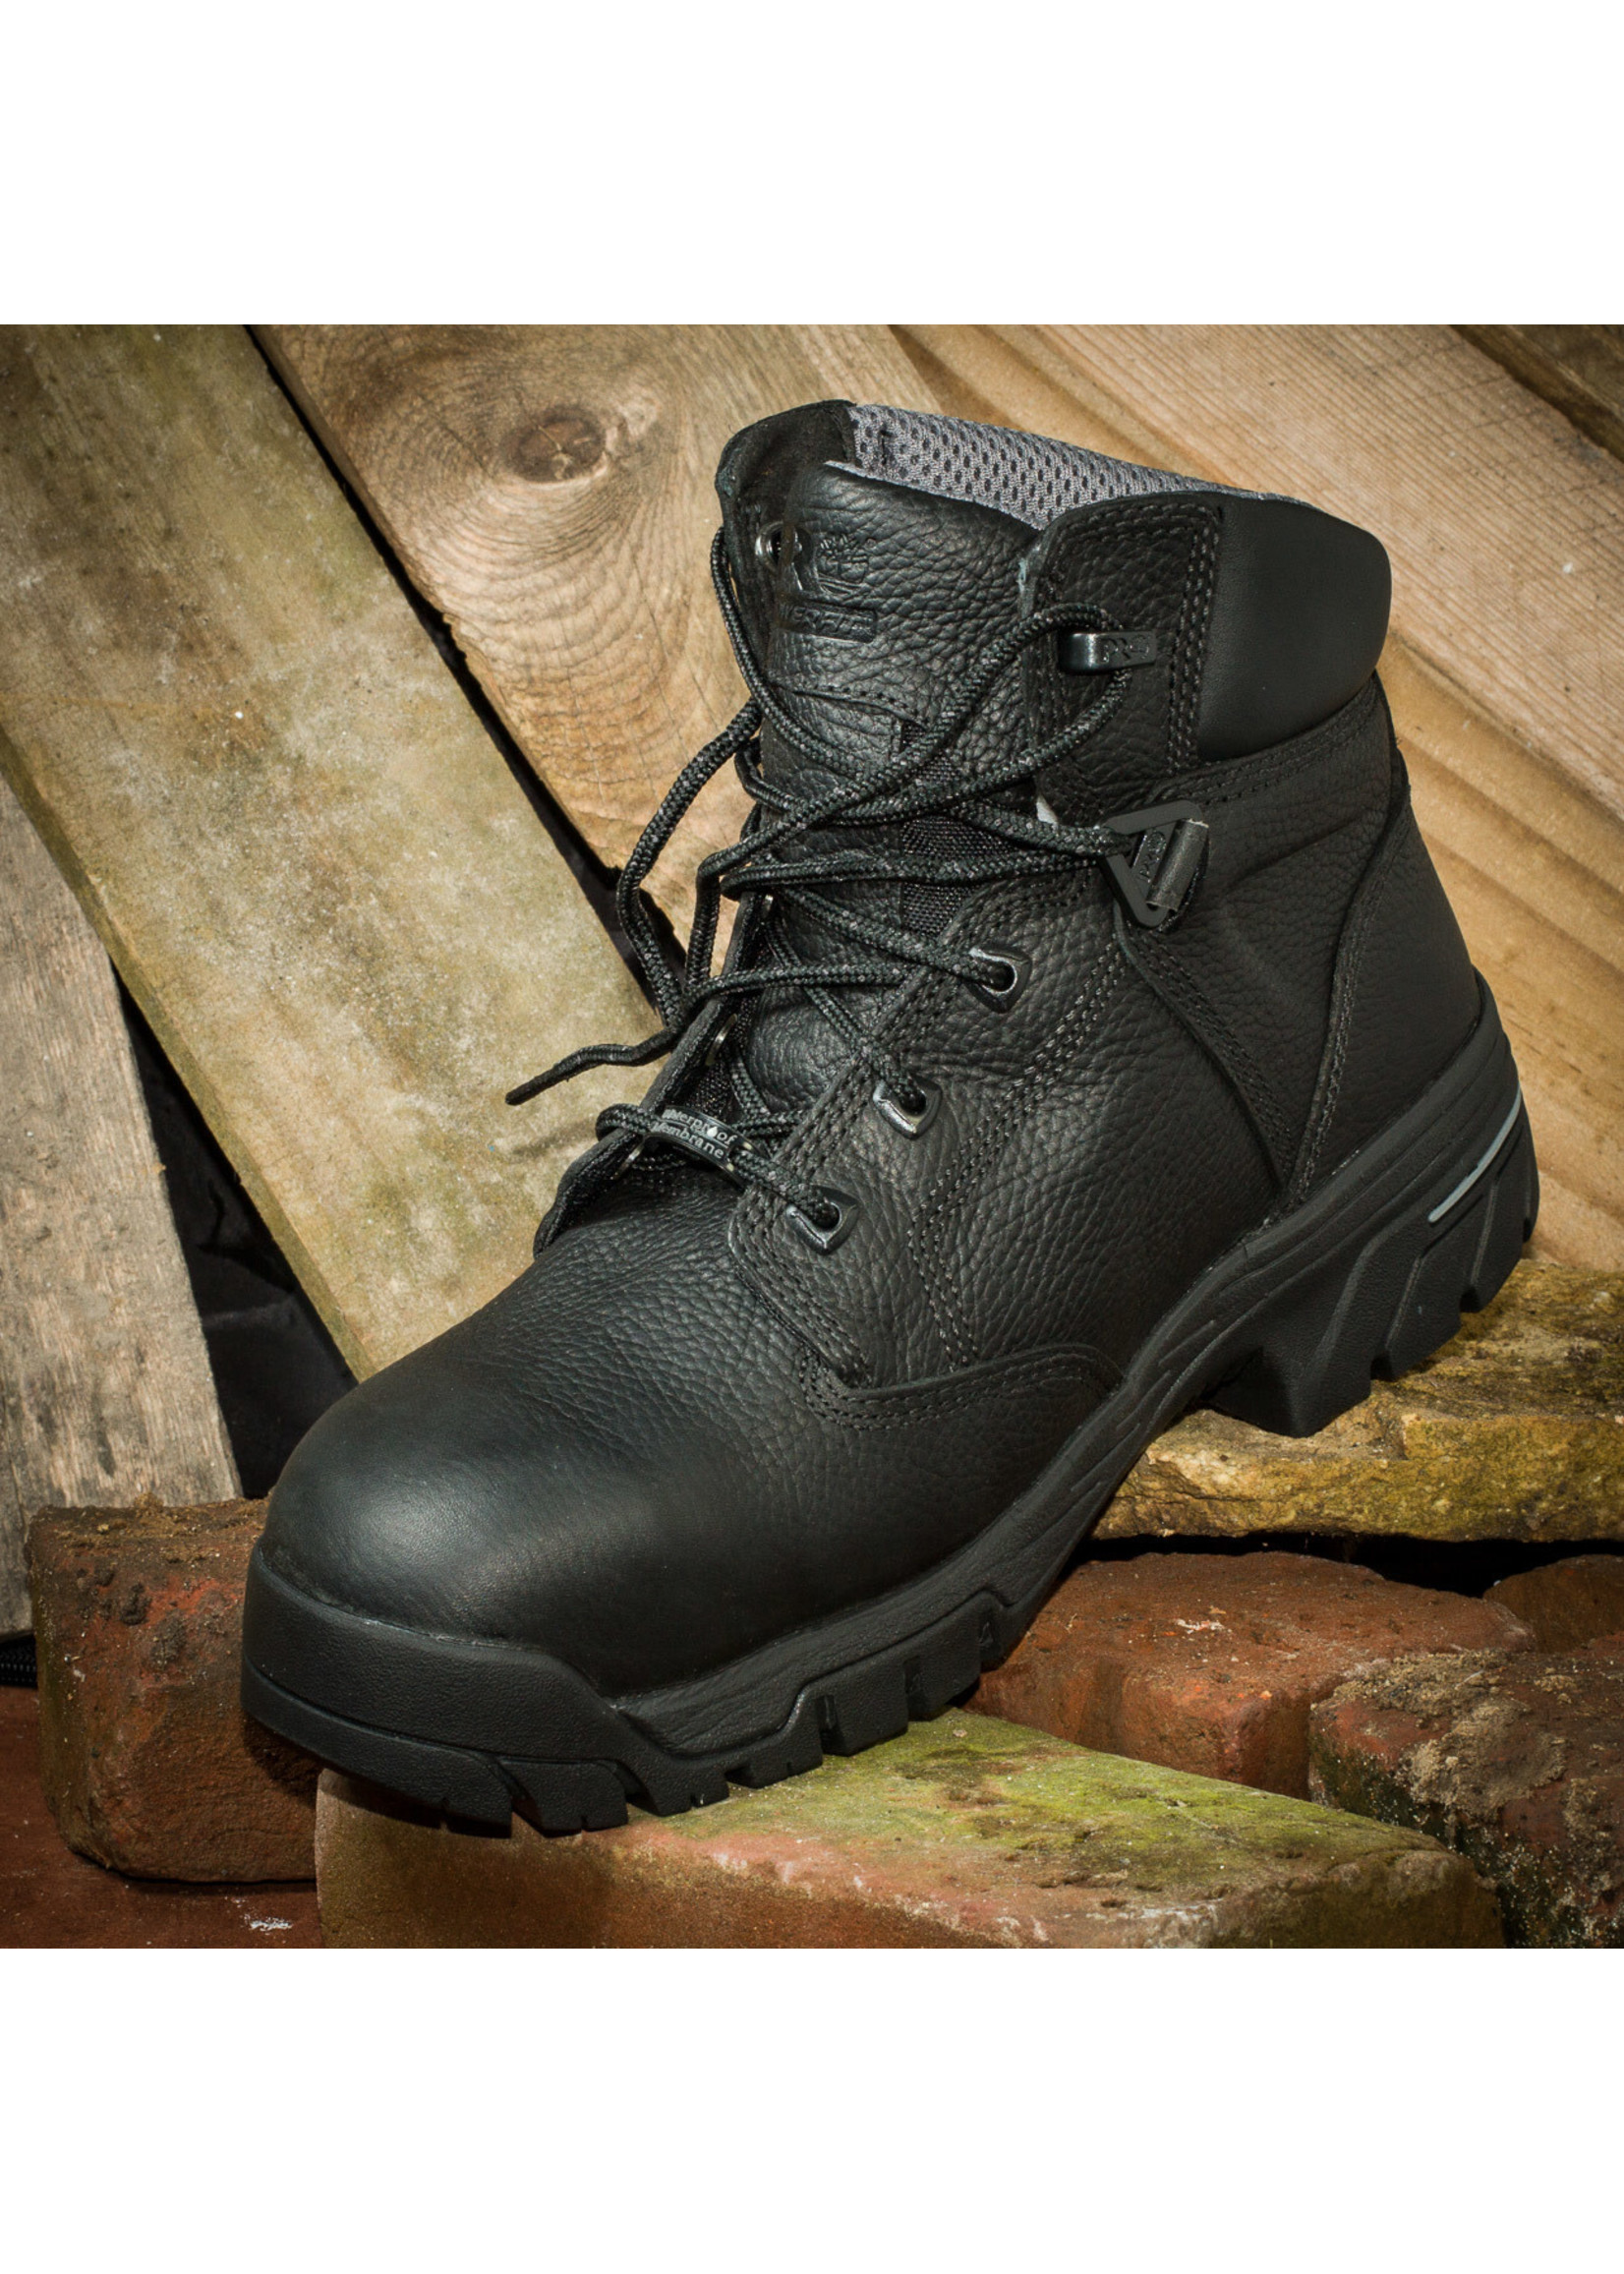 Timberland Pro Men's 6" Black Helix Waterproof Composite Toe Work Boots  87517